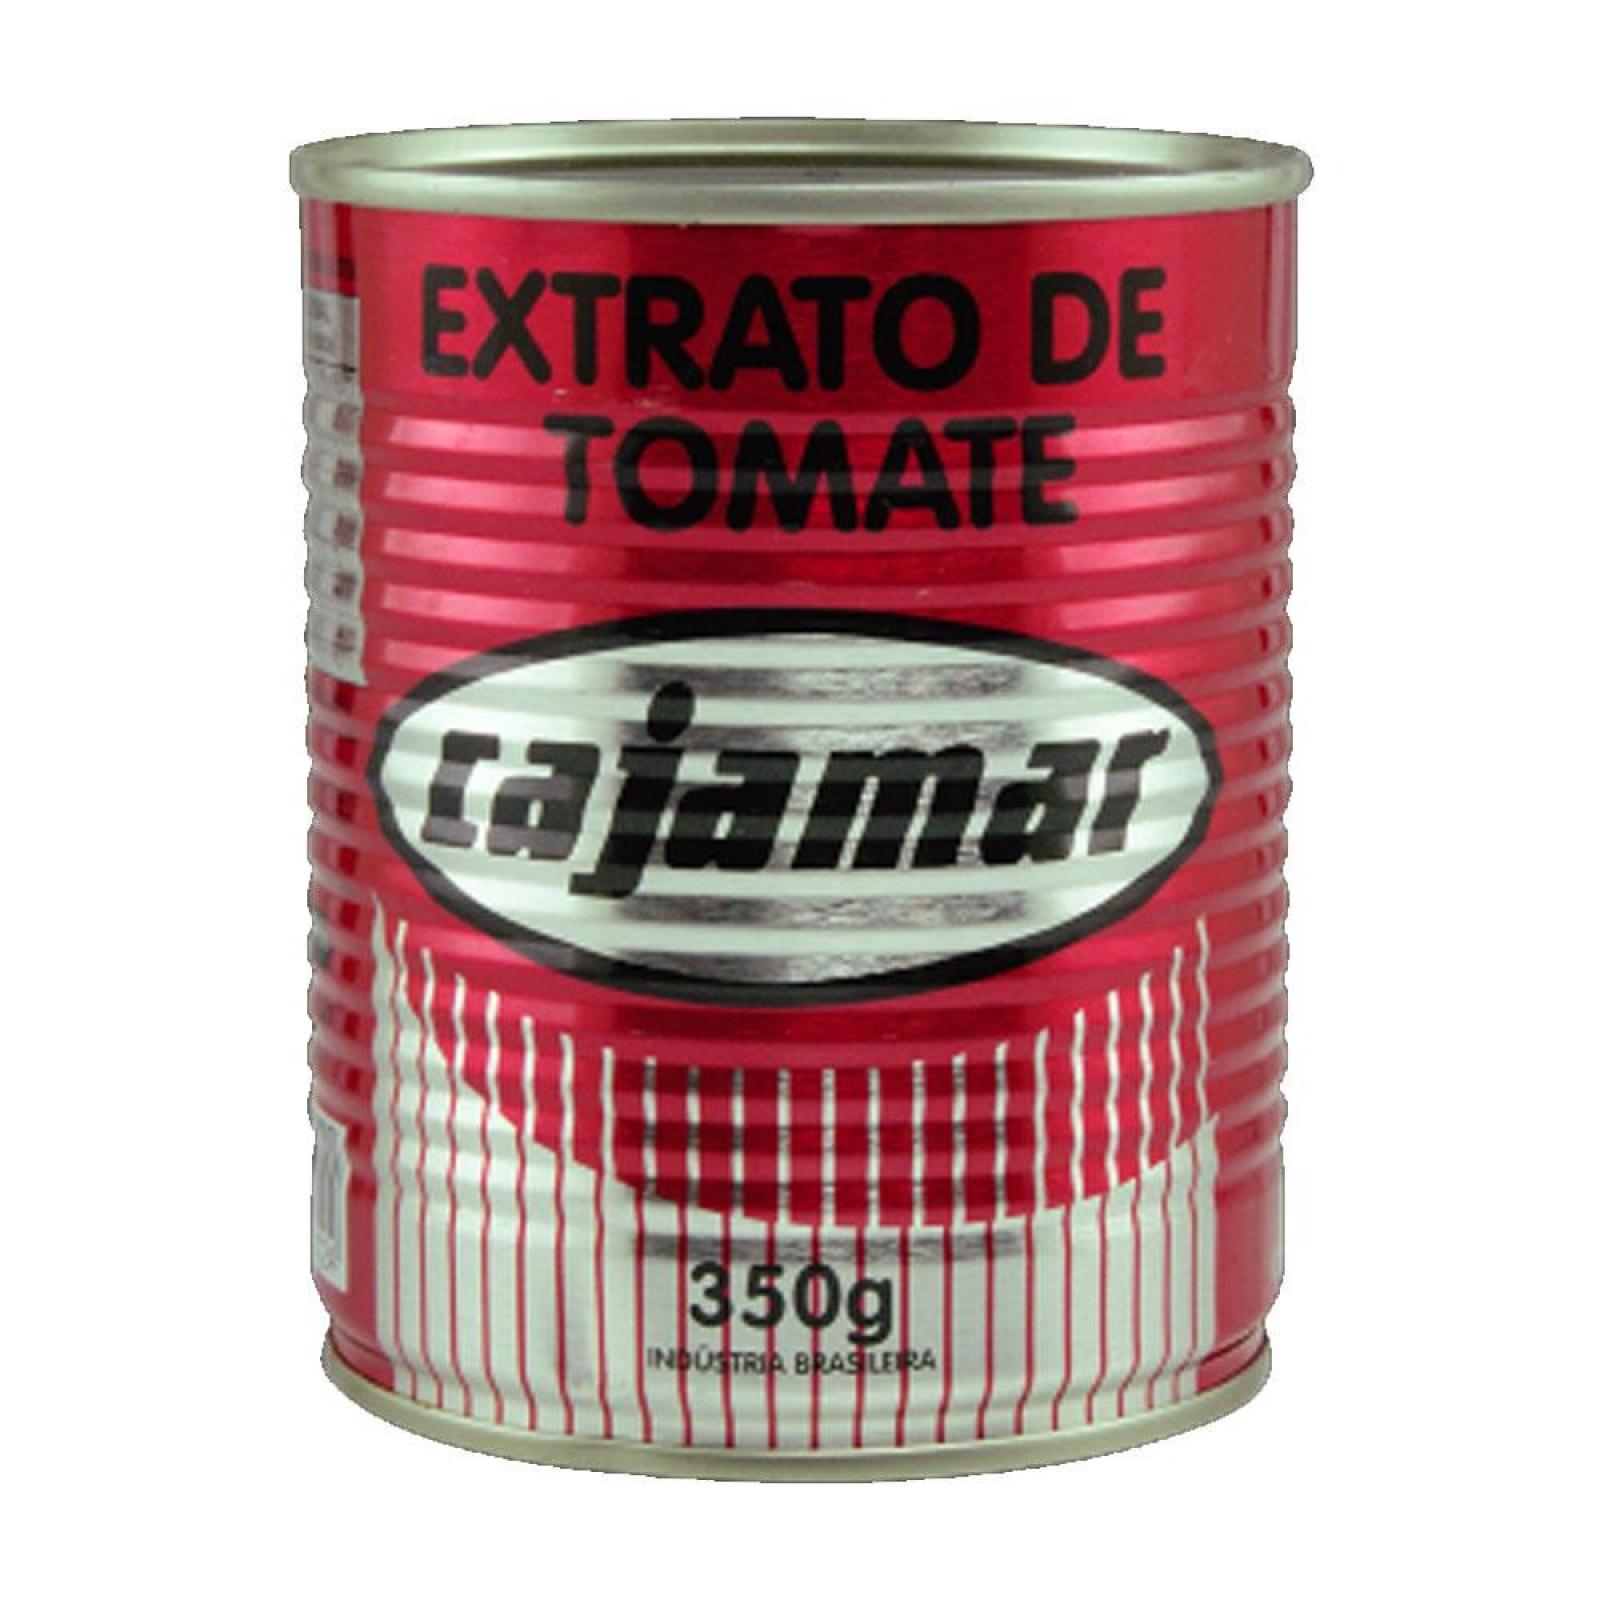 Cajamar Extrato de Tomate 350g